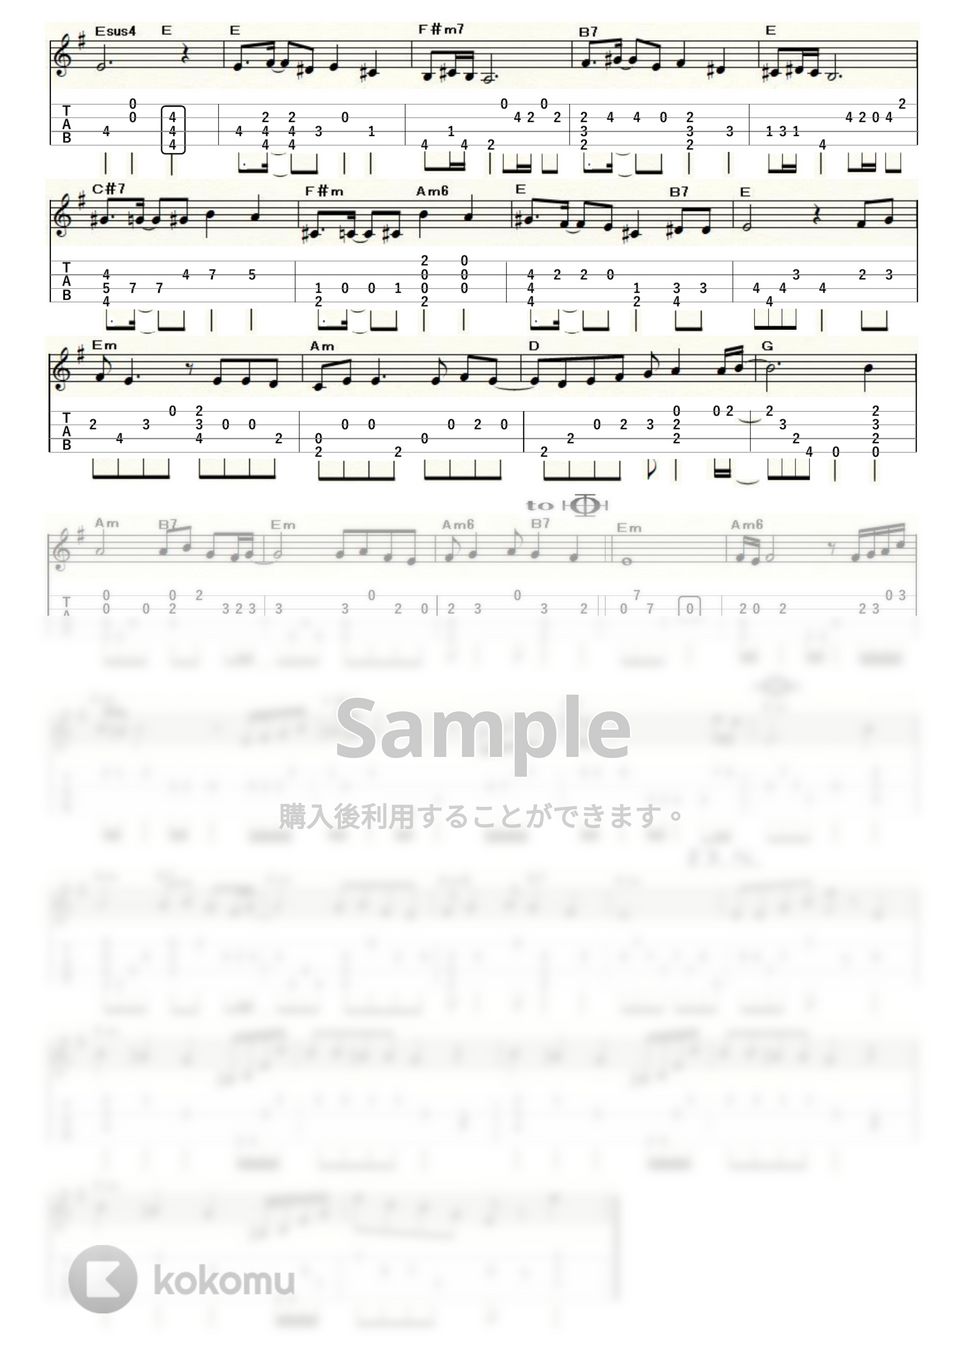 久保田早紀 - 異邦人 (ｳｸﾚﾚｿﾛ / Low-G / 上級) by ukulelepapa